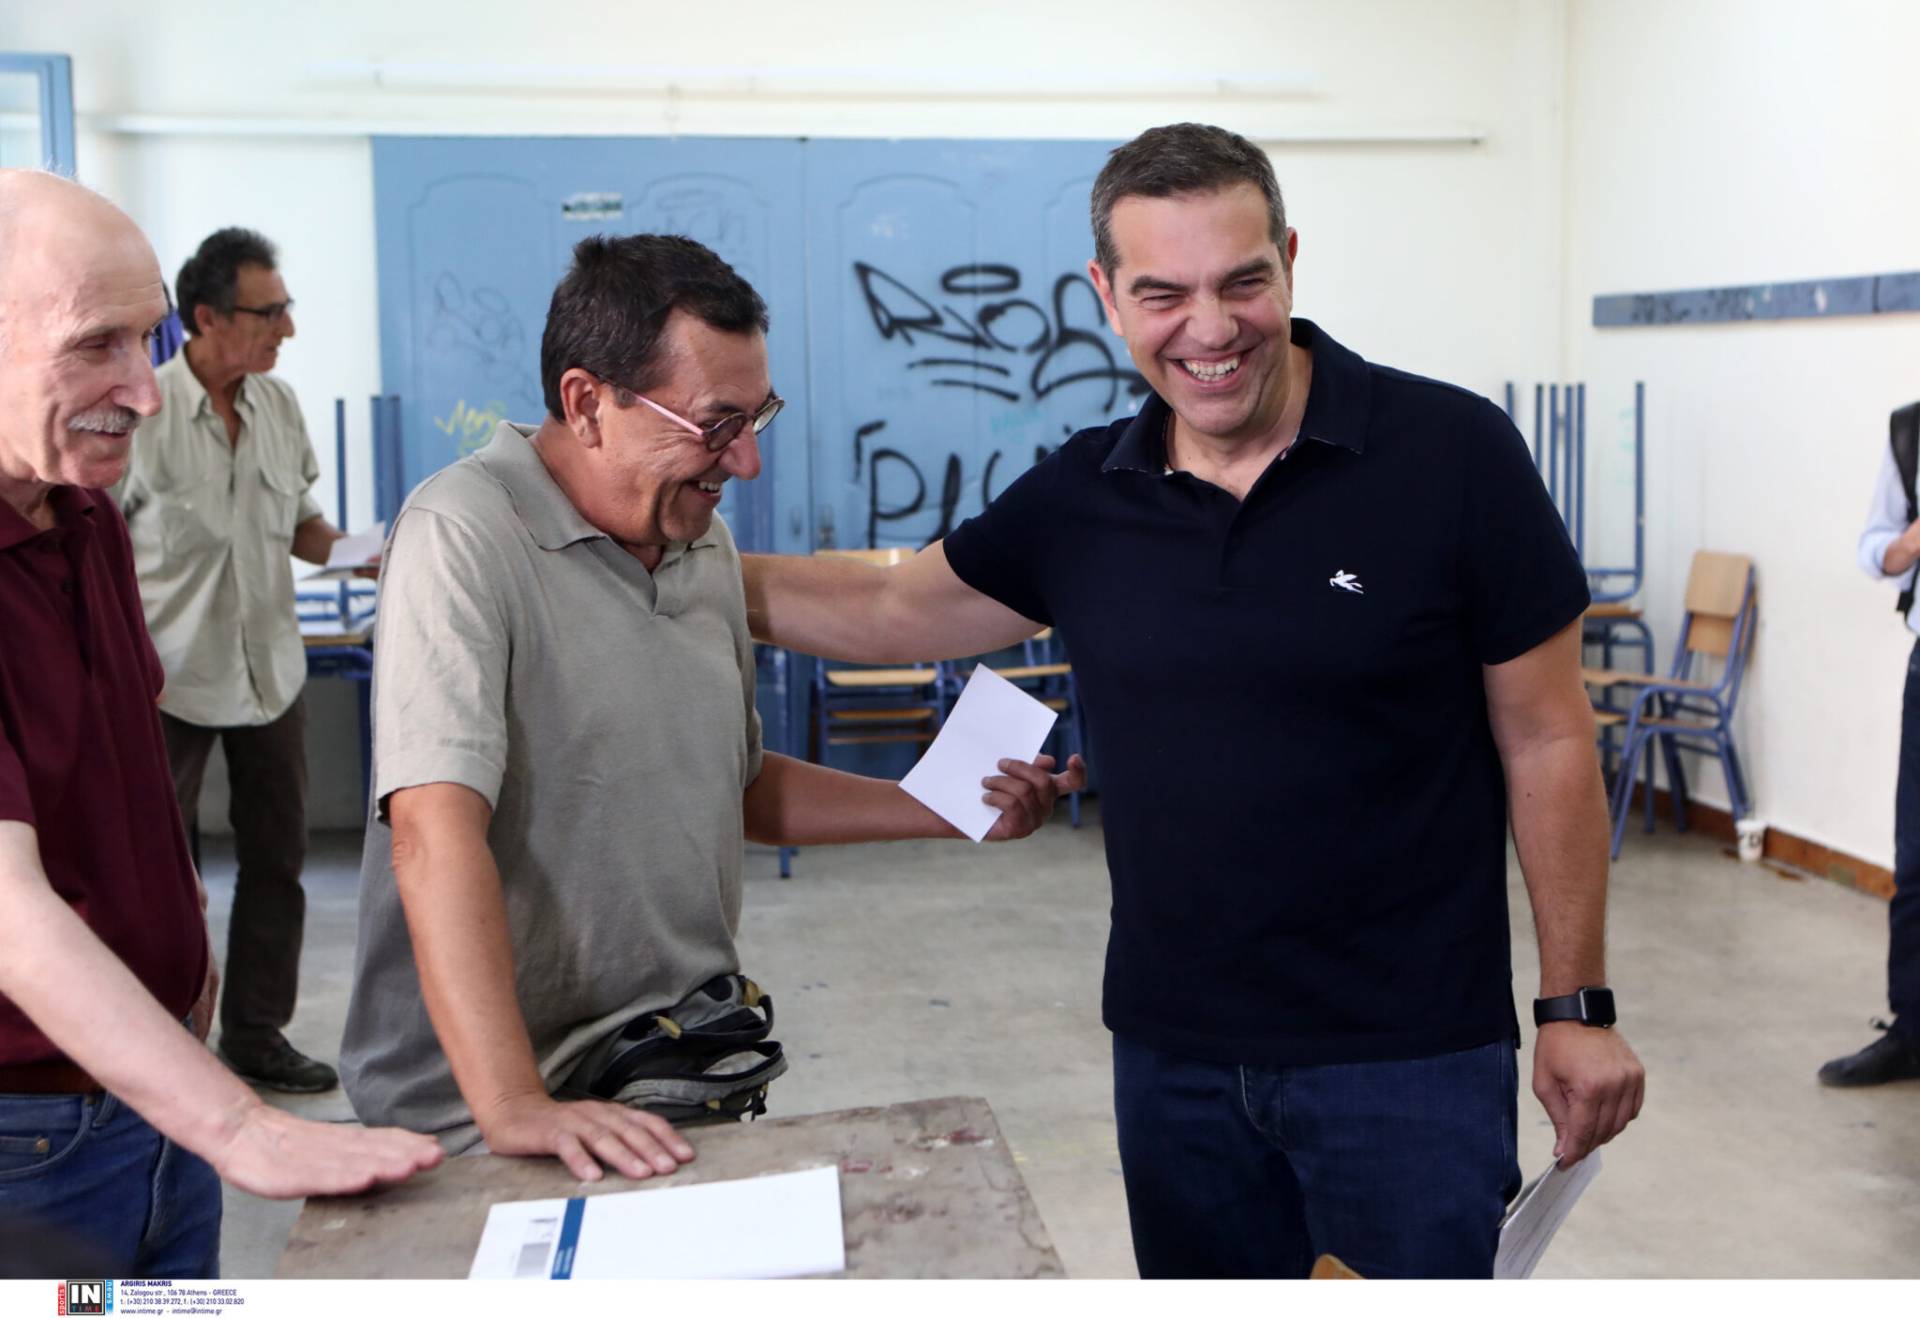 Ψήφισε ο Αλέξης Τσίπρας: «Βιάστηκαν πολύ όσοι κήρυξαν τον ΣΥΡΙΖΑ απόντα» – Πότε αναμένονται τα πρώτα αποτελέσματα